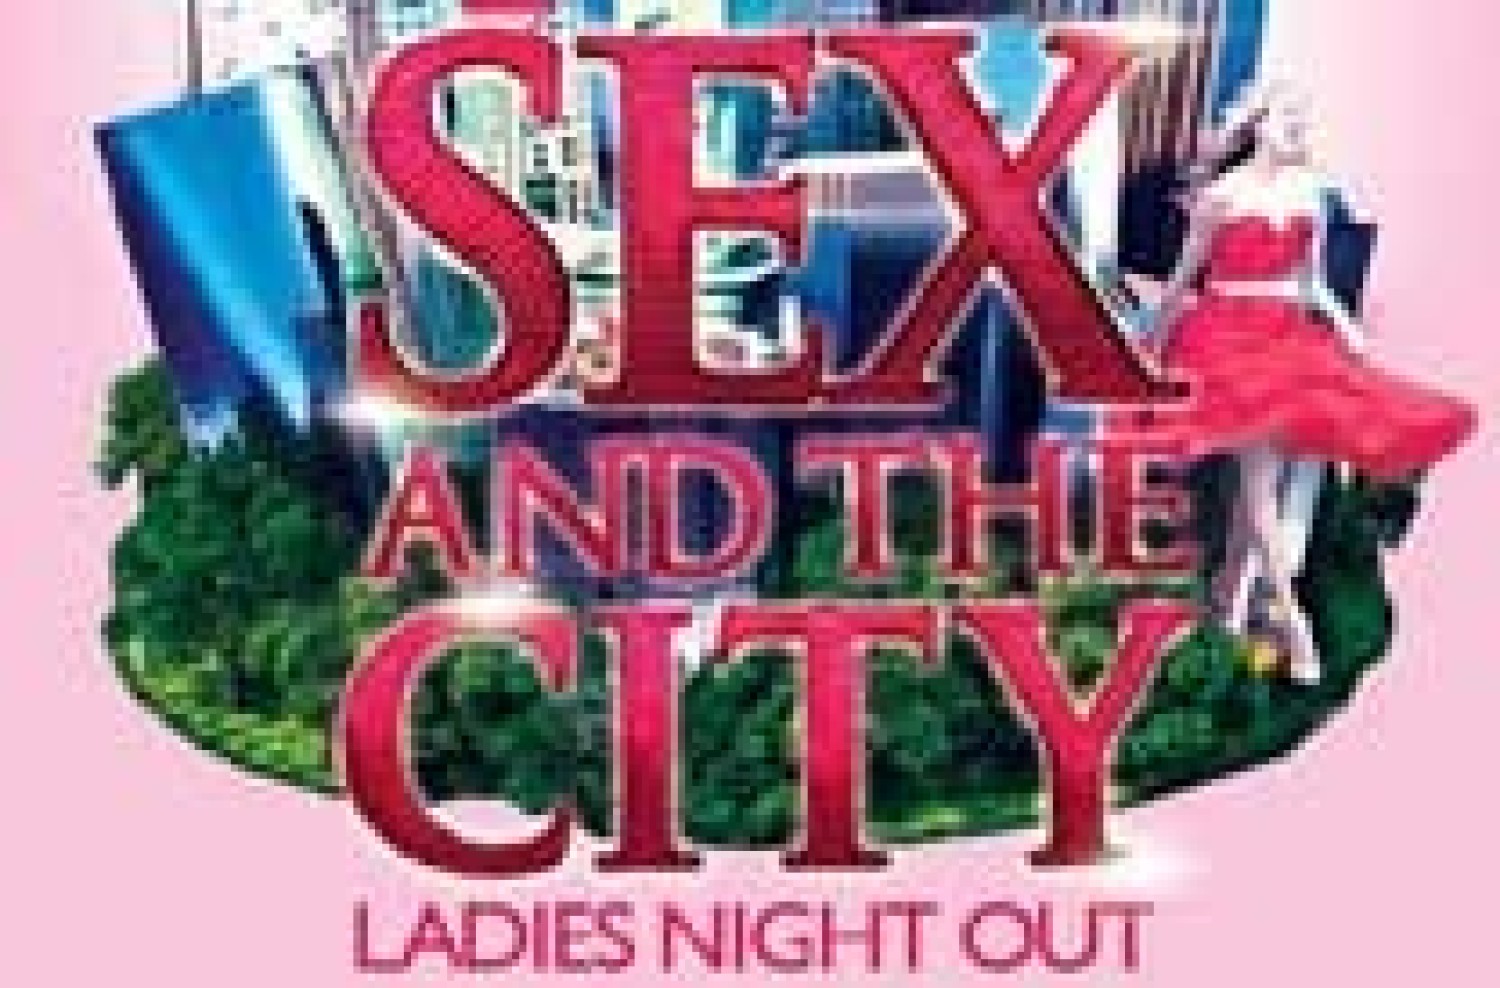 Party nieuws: Op vrijdag 3 mei is het weer tijd voor Sex in the City!